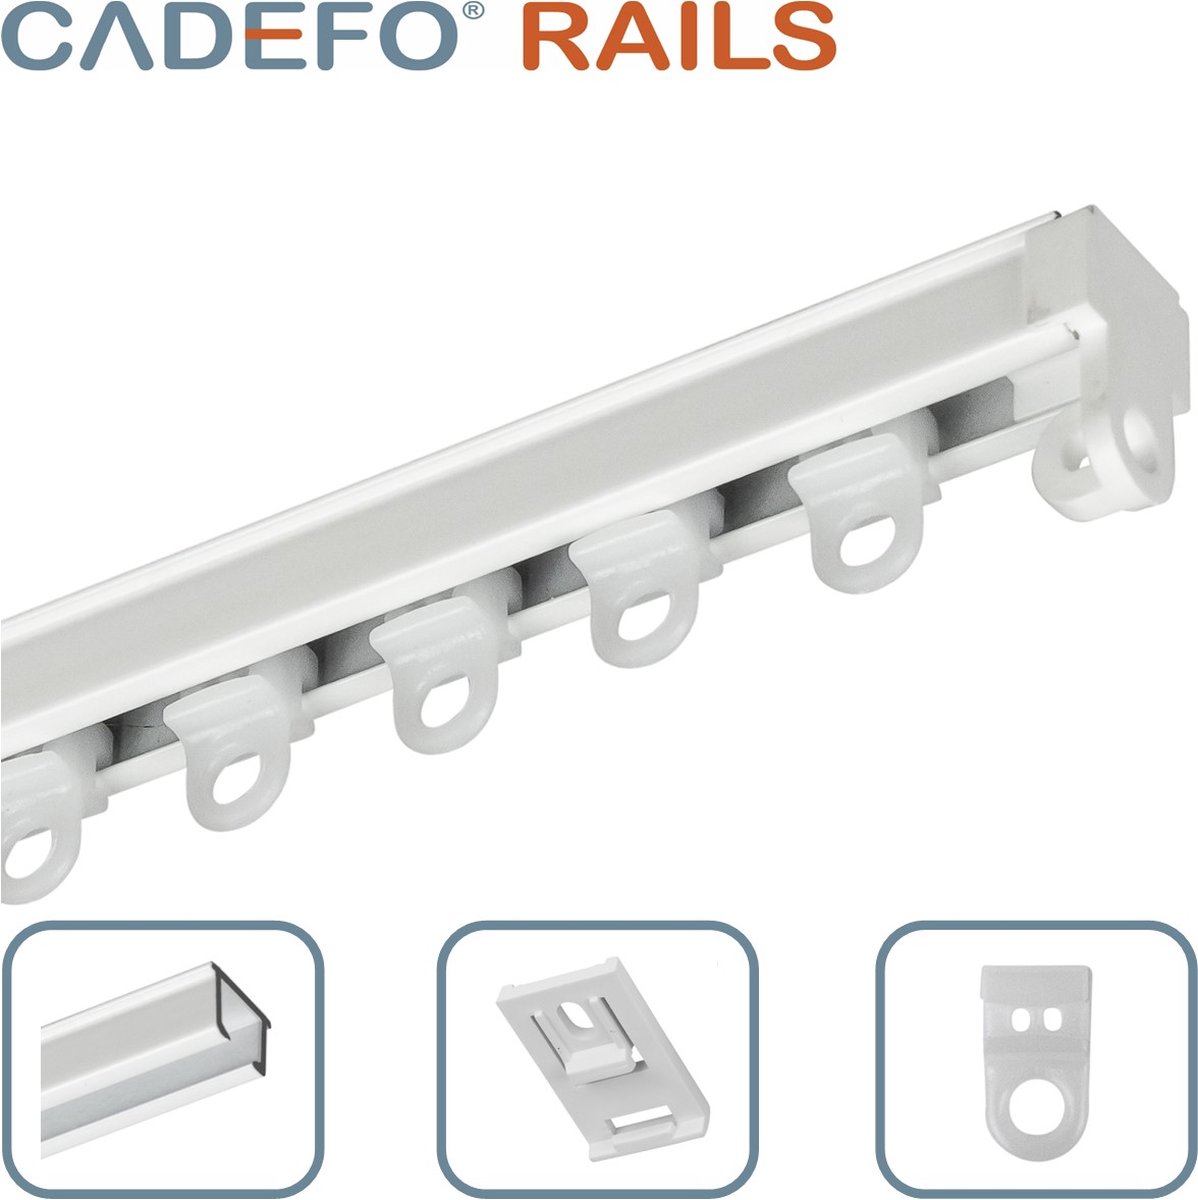 CADEFO RAILS (251 - 300 cm) Gordijnrails - Compleet op maat! - UIT 1 STUK - Leverbaar tot 6 meter - Plafondbevestiging - Lengte 296 cm